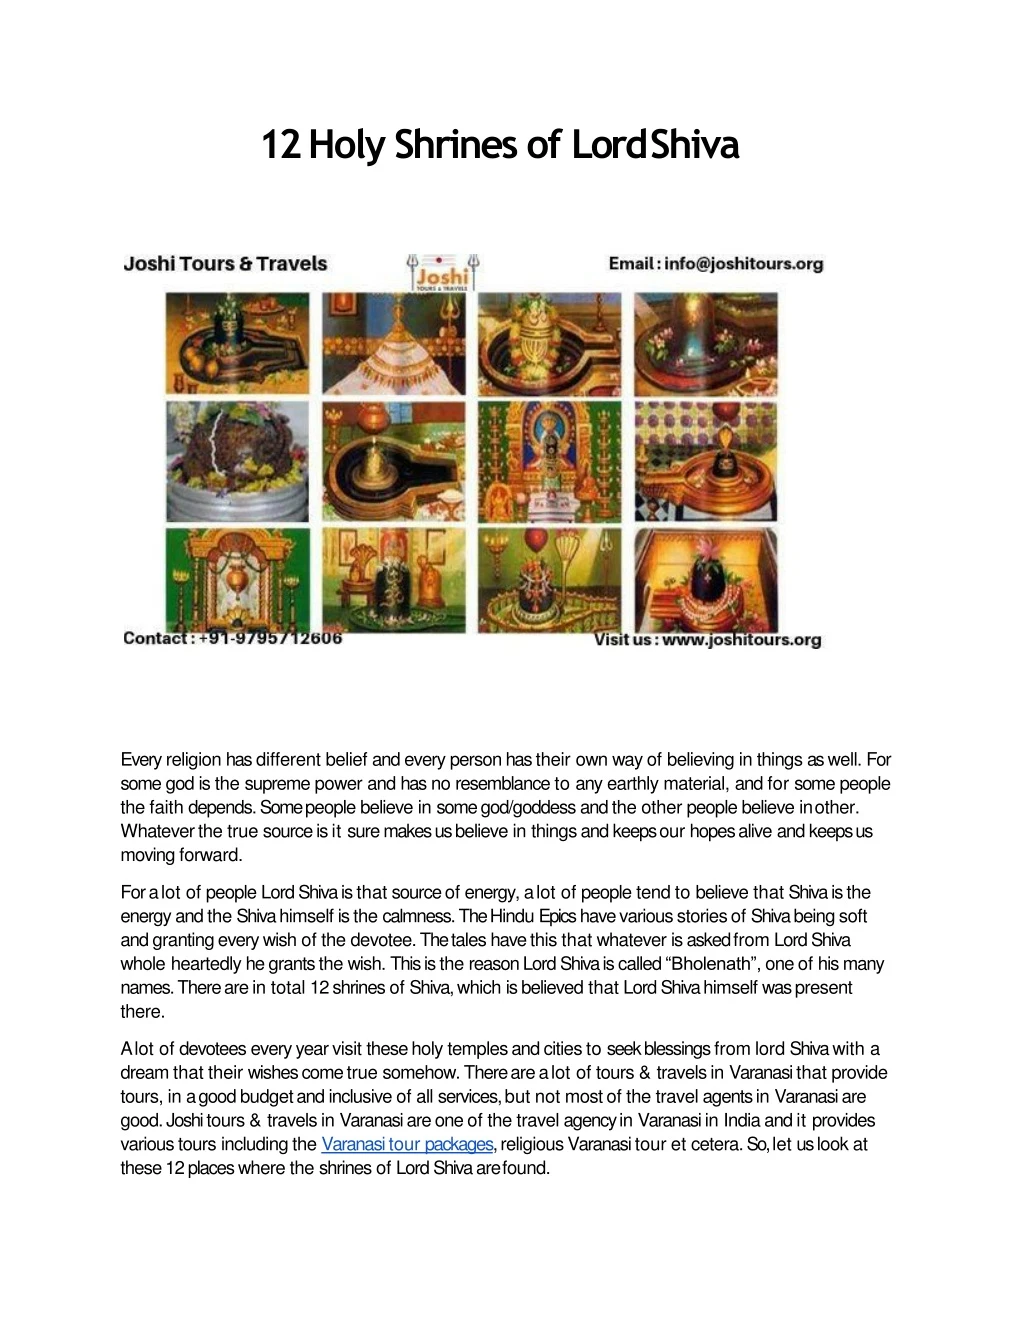 12 holy shrines of lord shiva